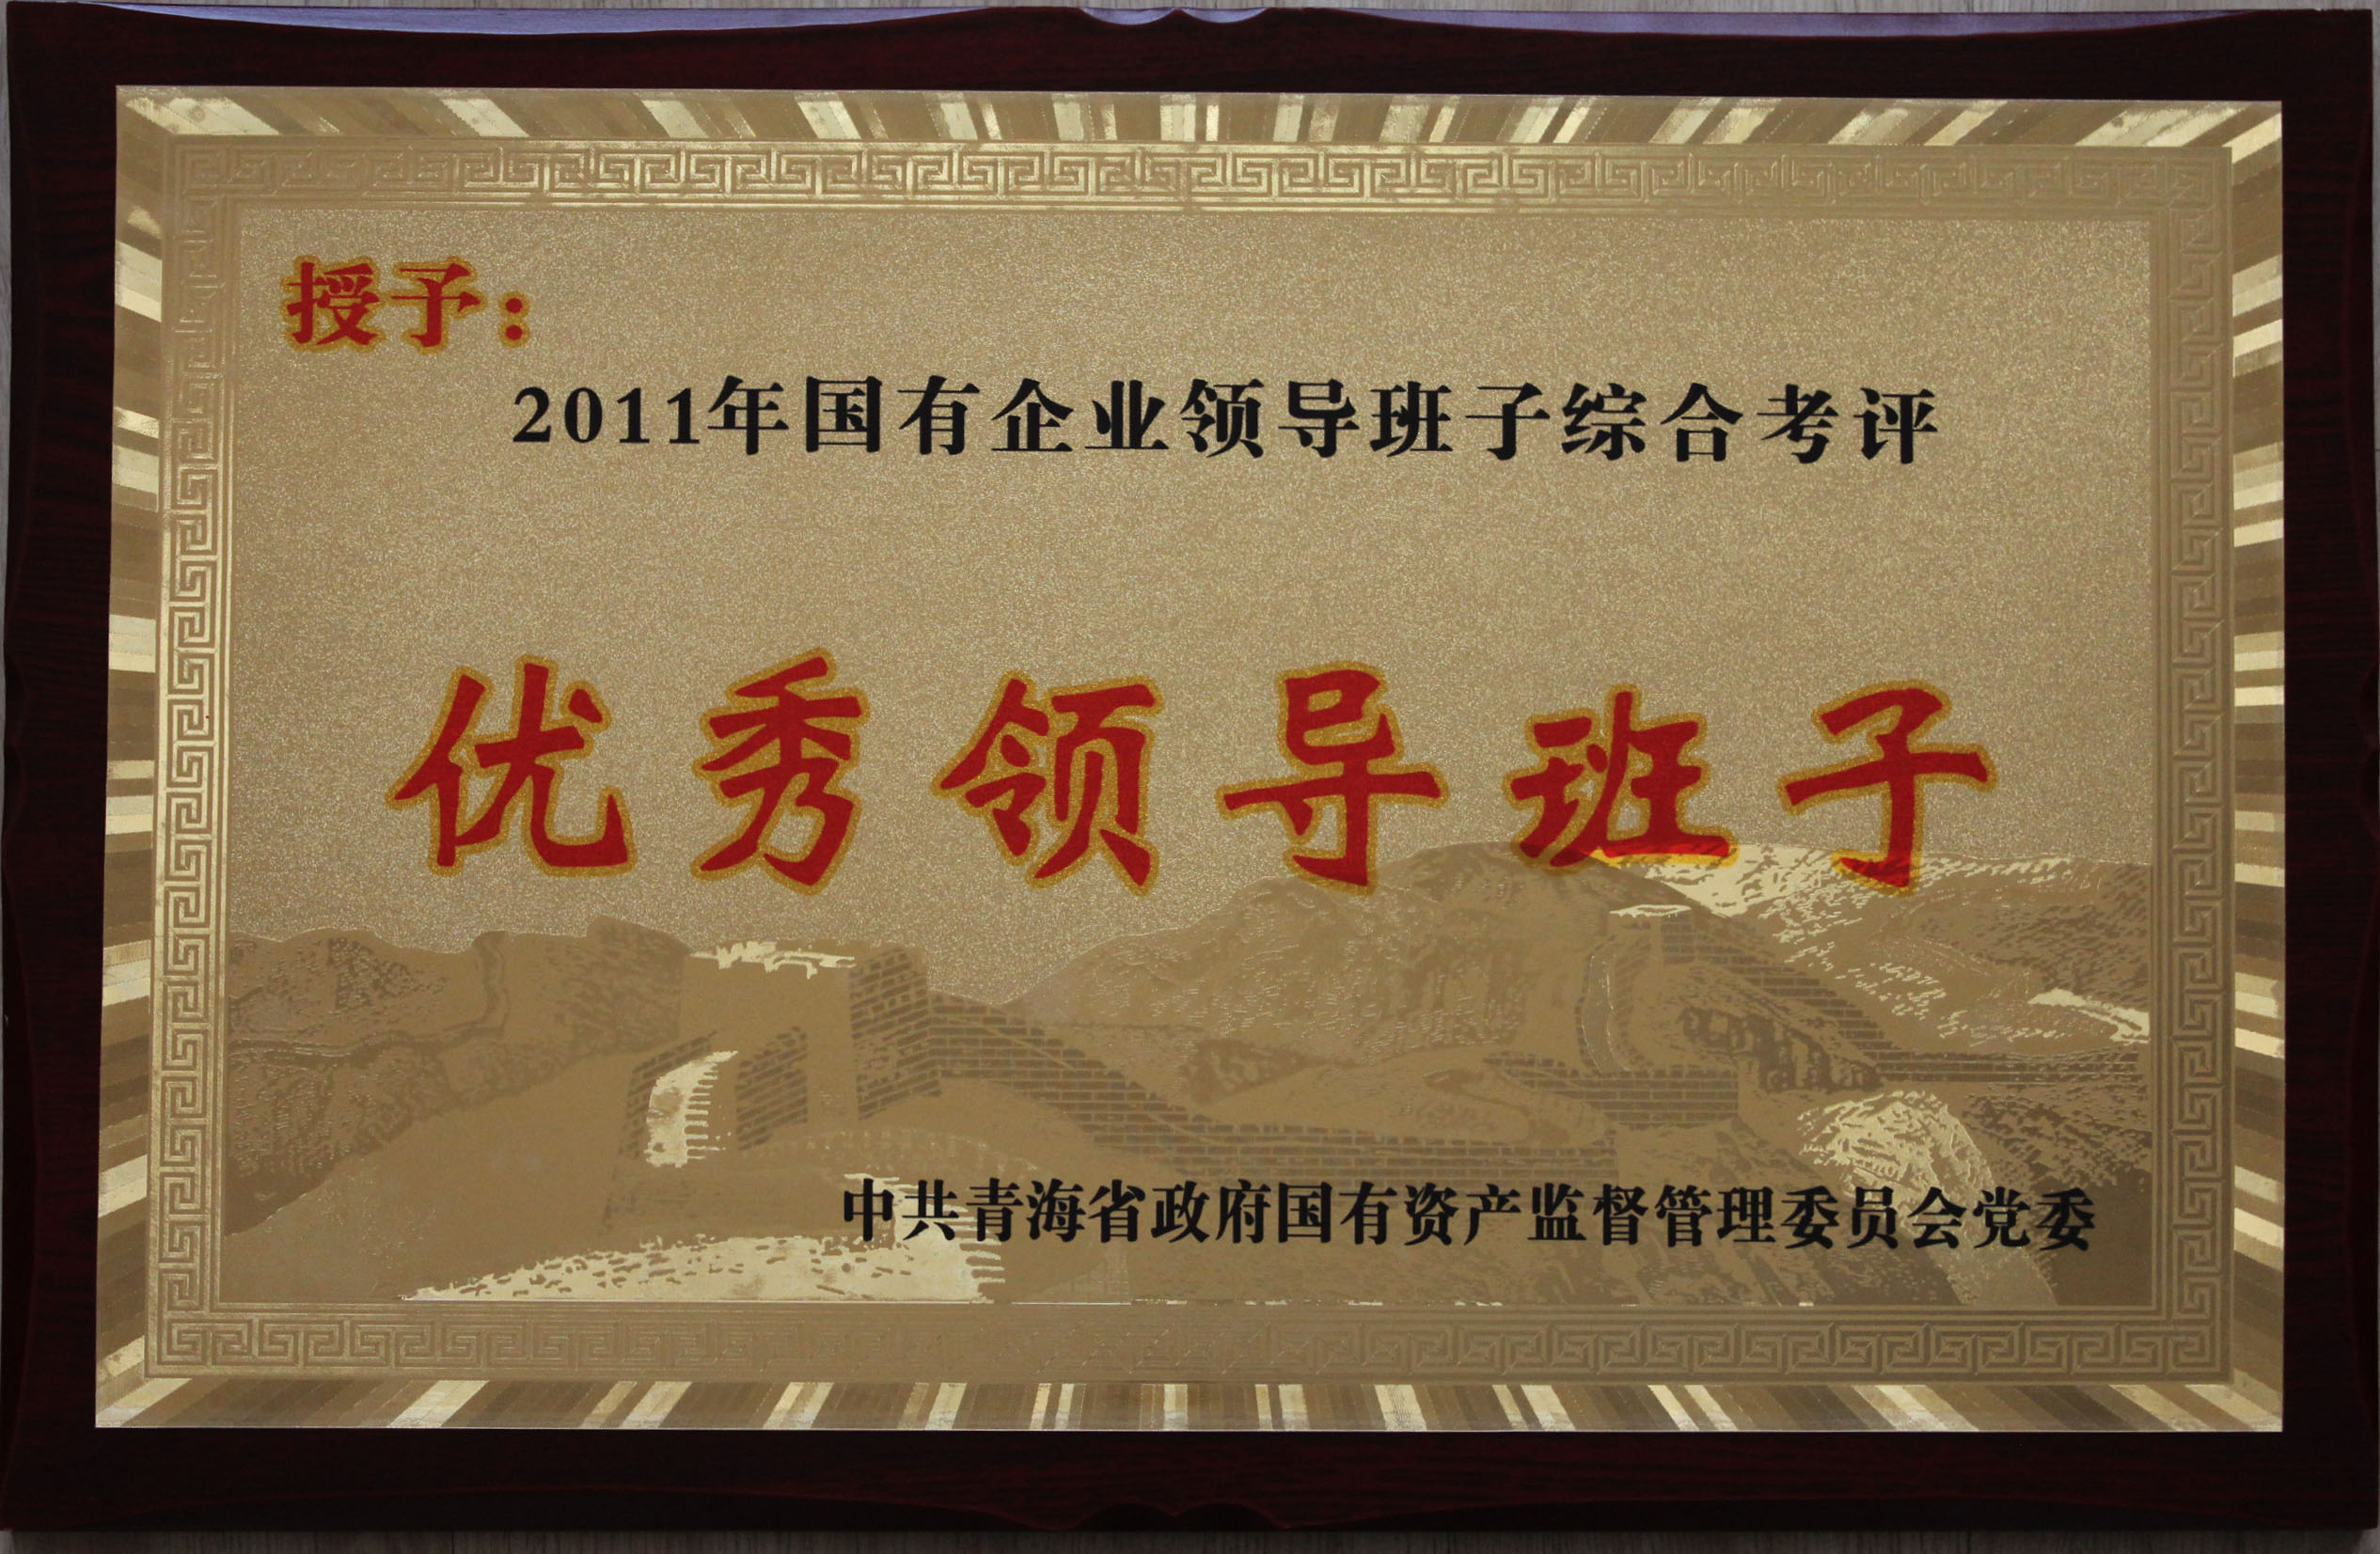 省物产集团总公司领导班子被评为2011年度优秀领导班子